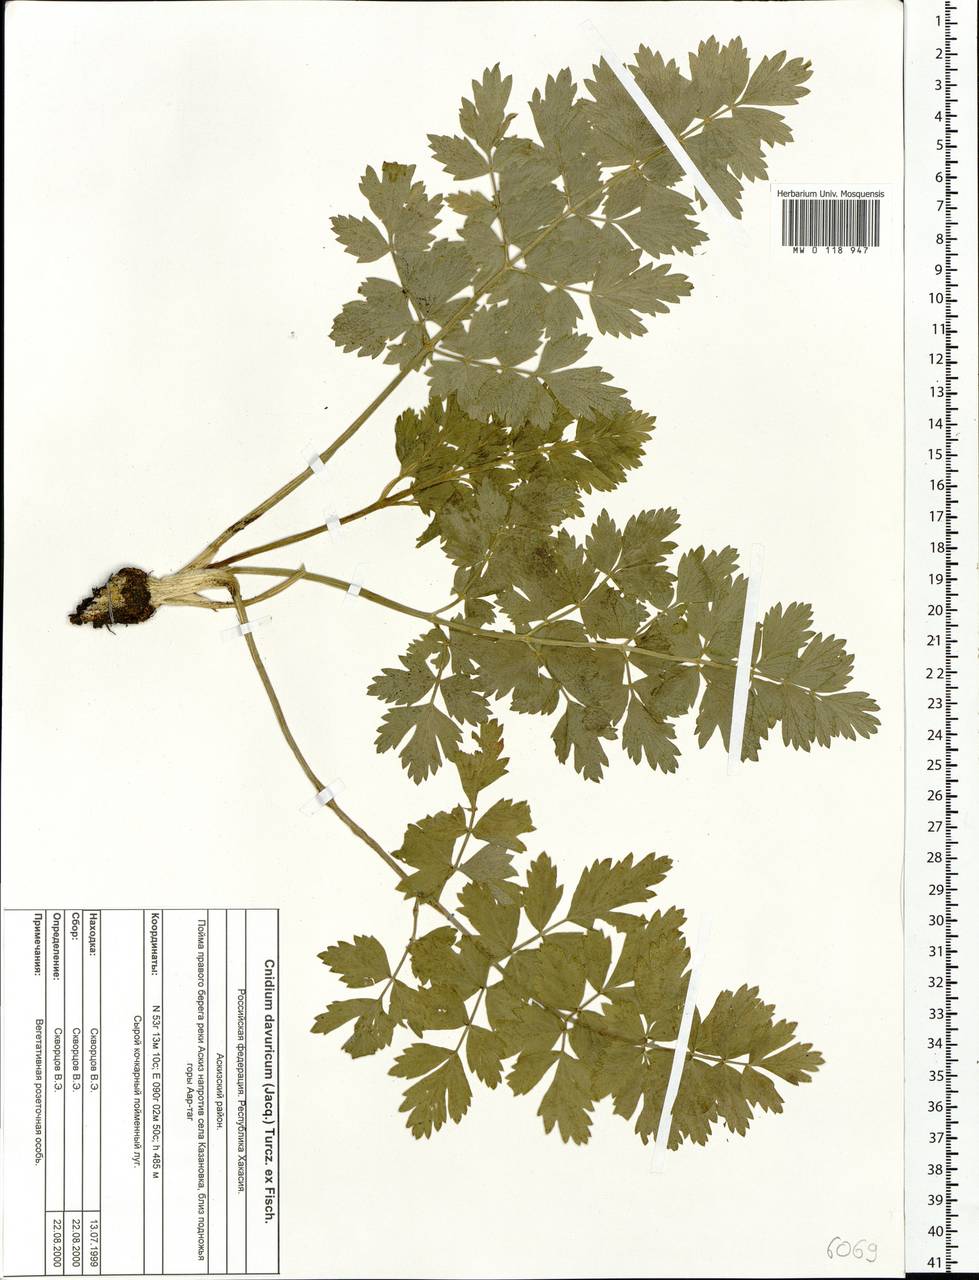 Cnidium dauricum (Jacq.) Turcz. ex Fisch. & C. A. Mey., Сибирь, Алтай и Саяны (S2) (Россия)